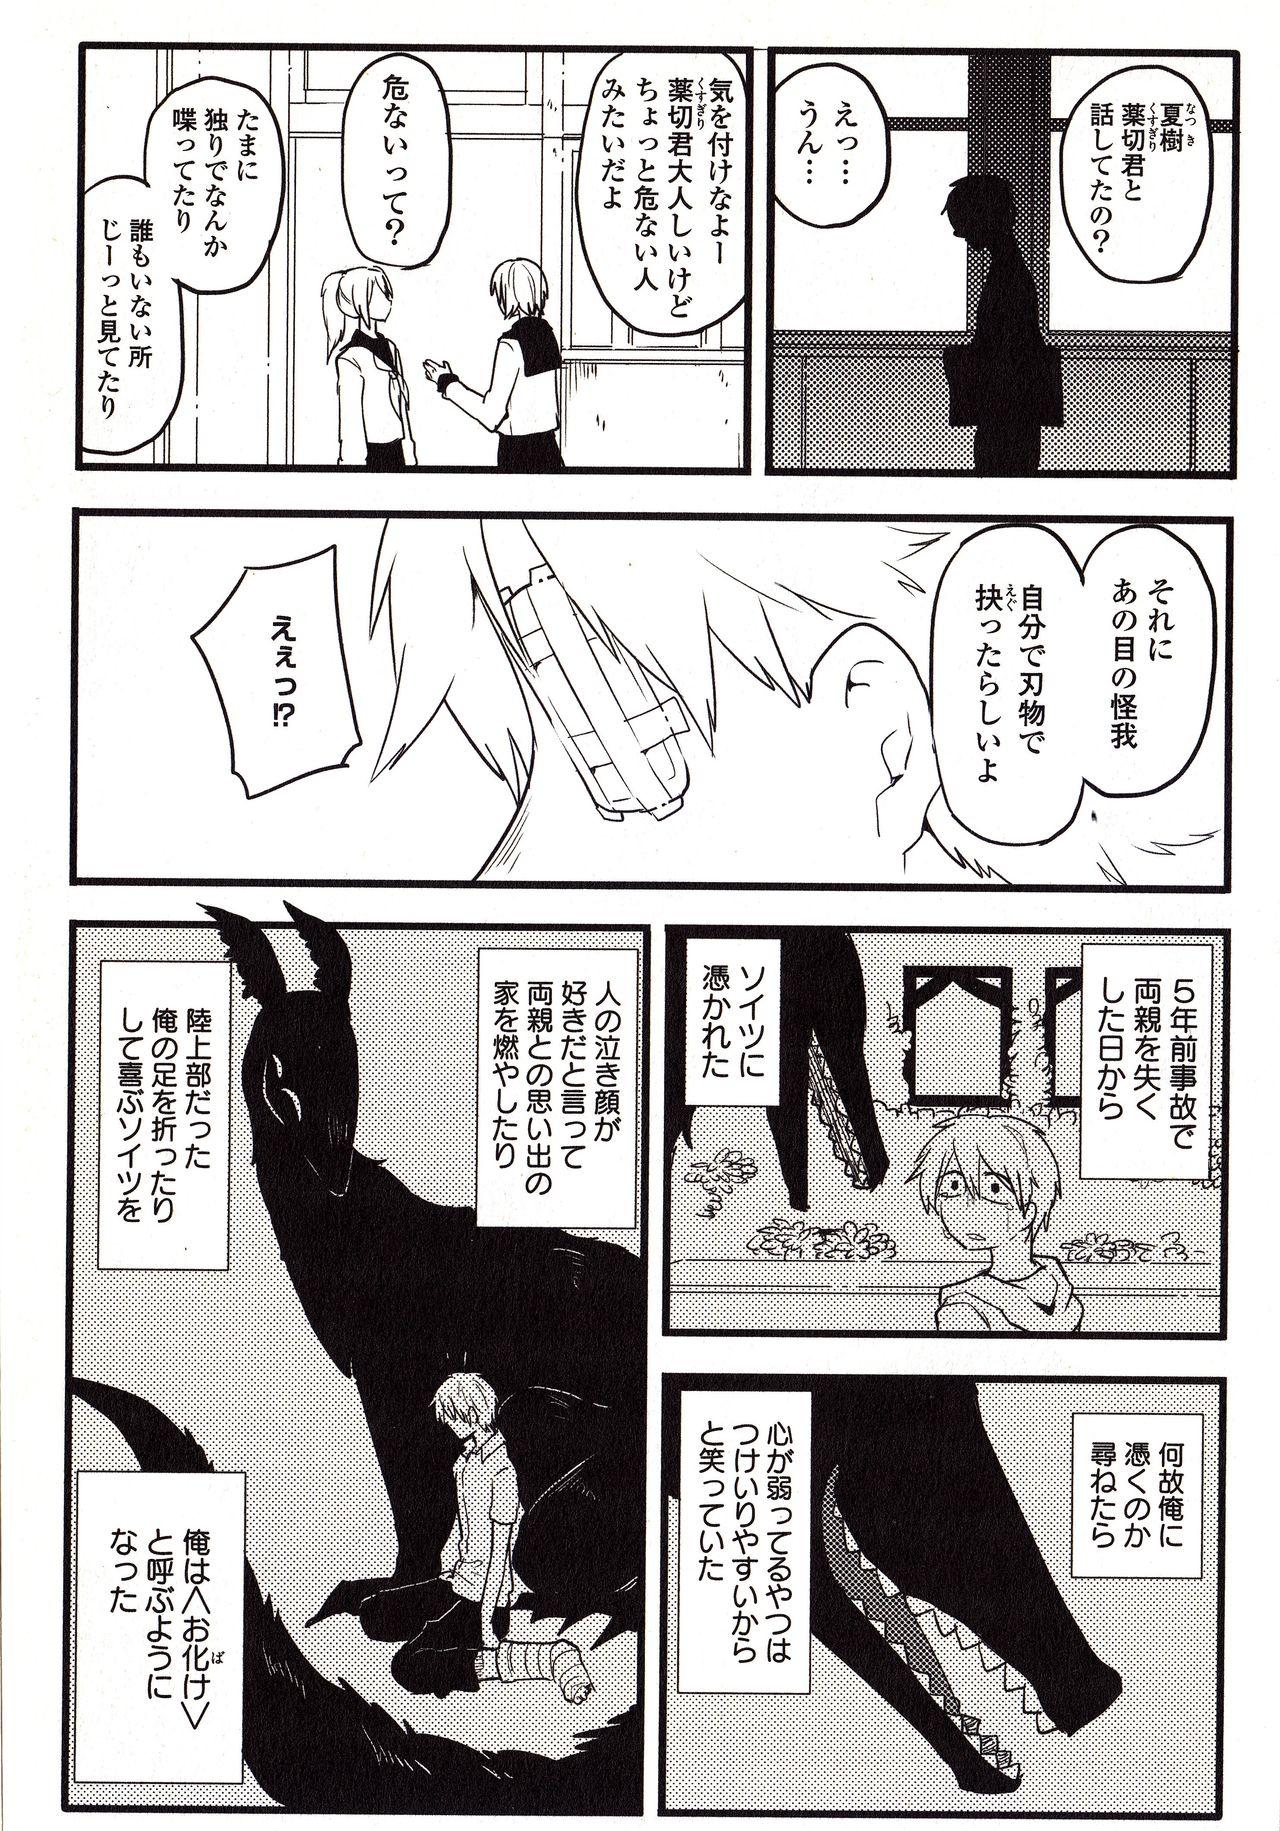 Fudendo Sanzo manga Exposed - Page 7